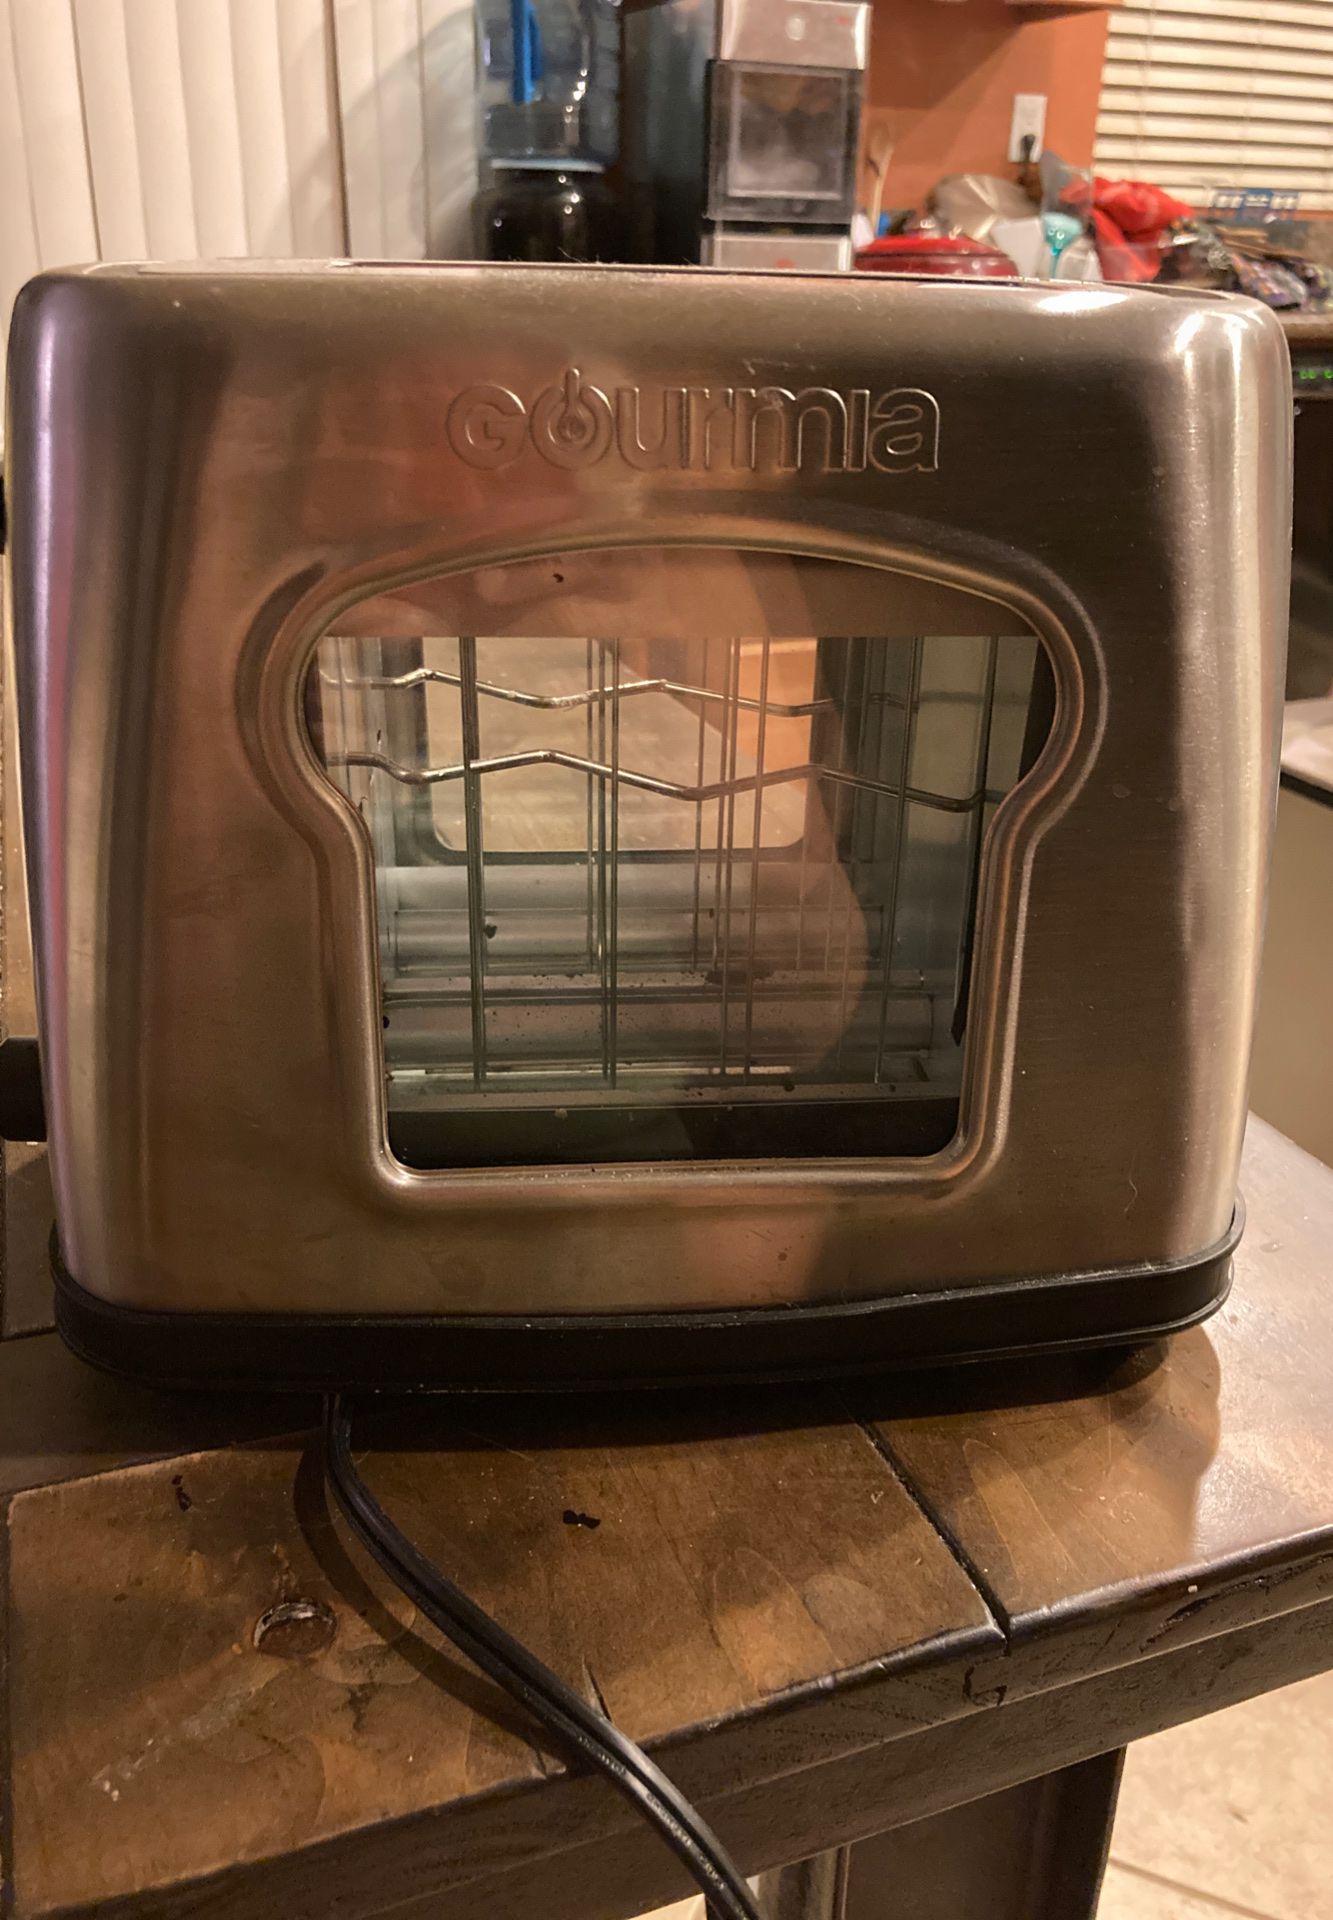 Gourmia toaster